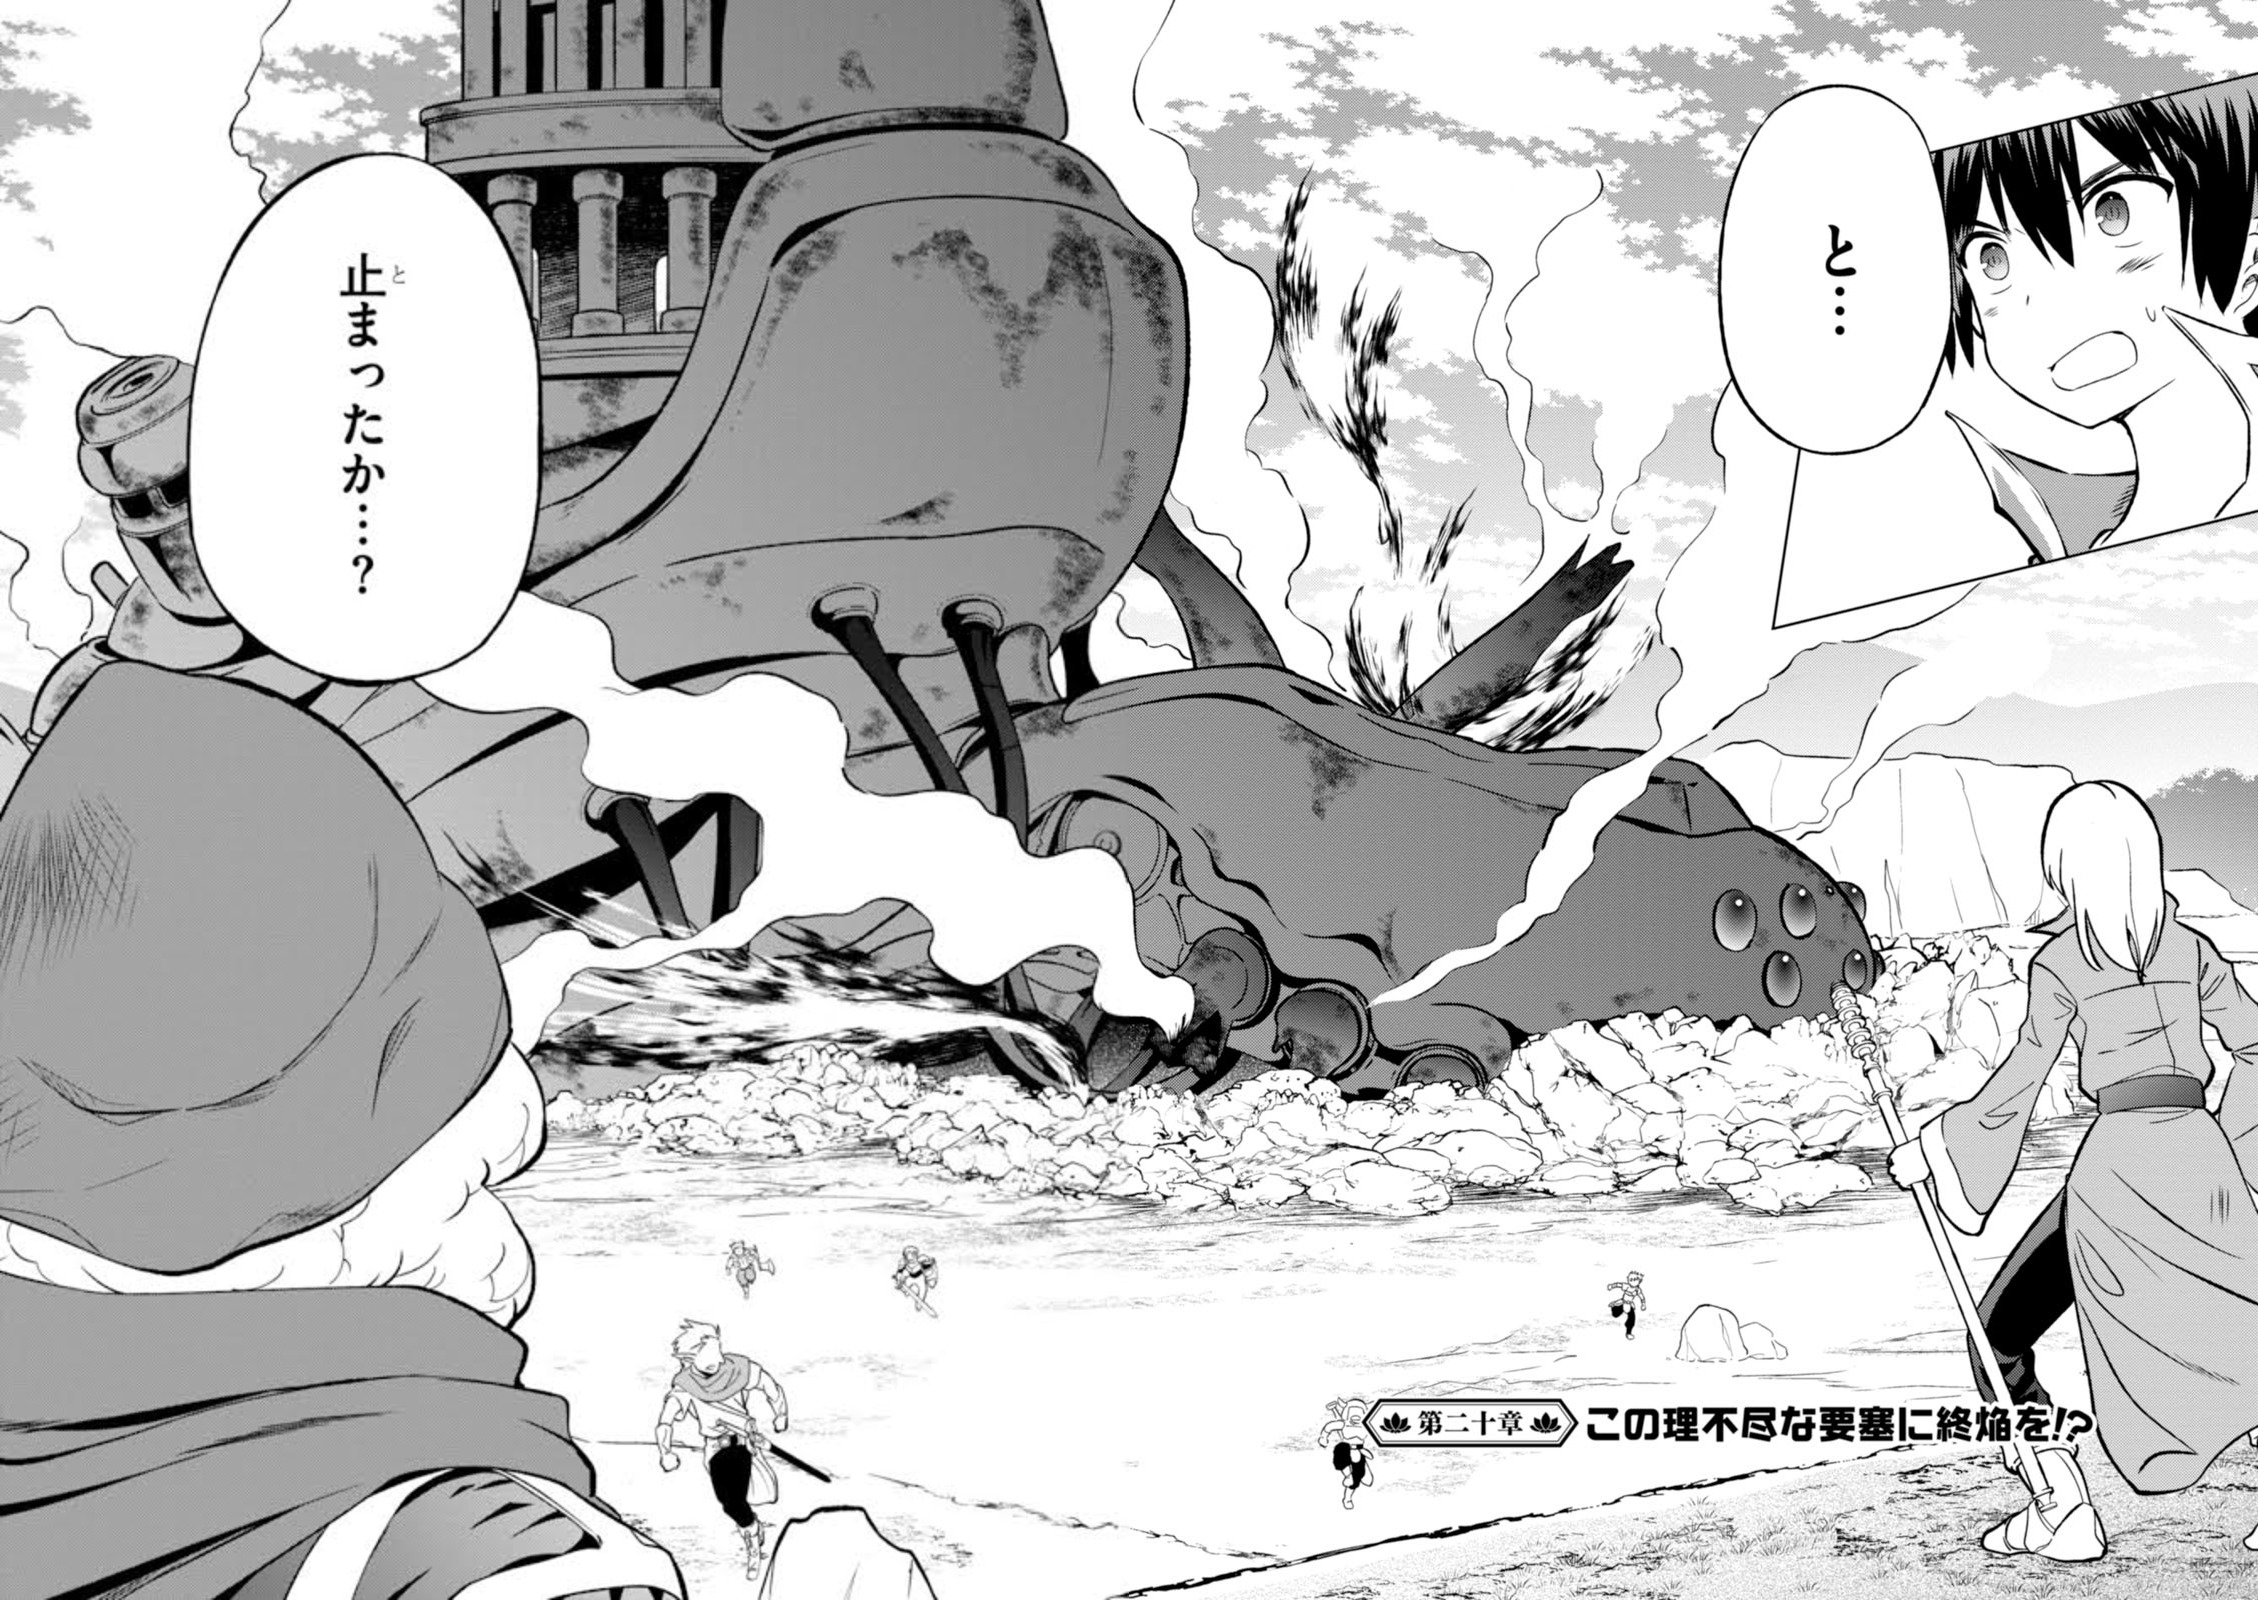 Enigma(Musaigen Phantom World) vs Sylvia(Konosuba) - Battles - Comic Vine